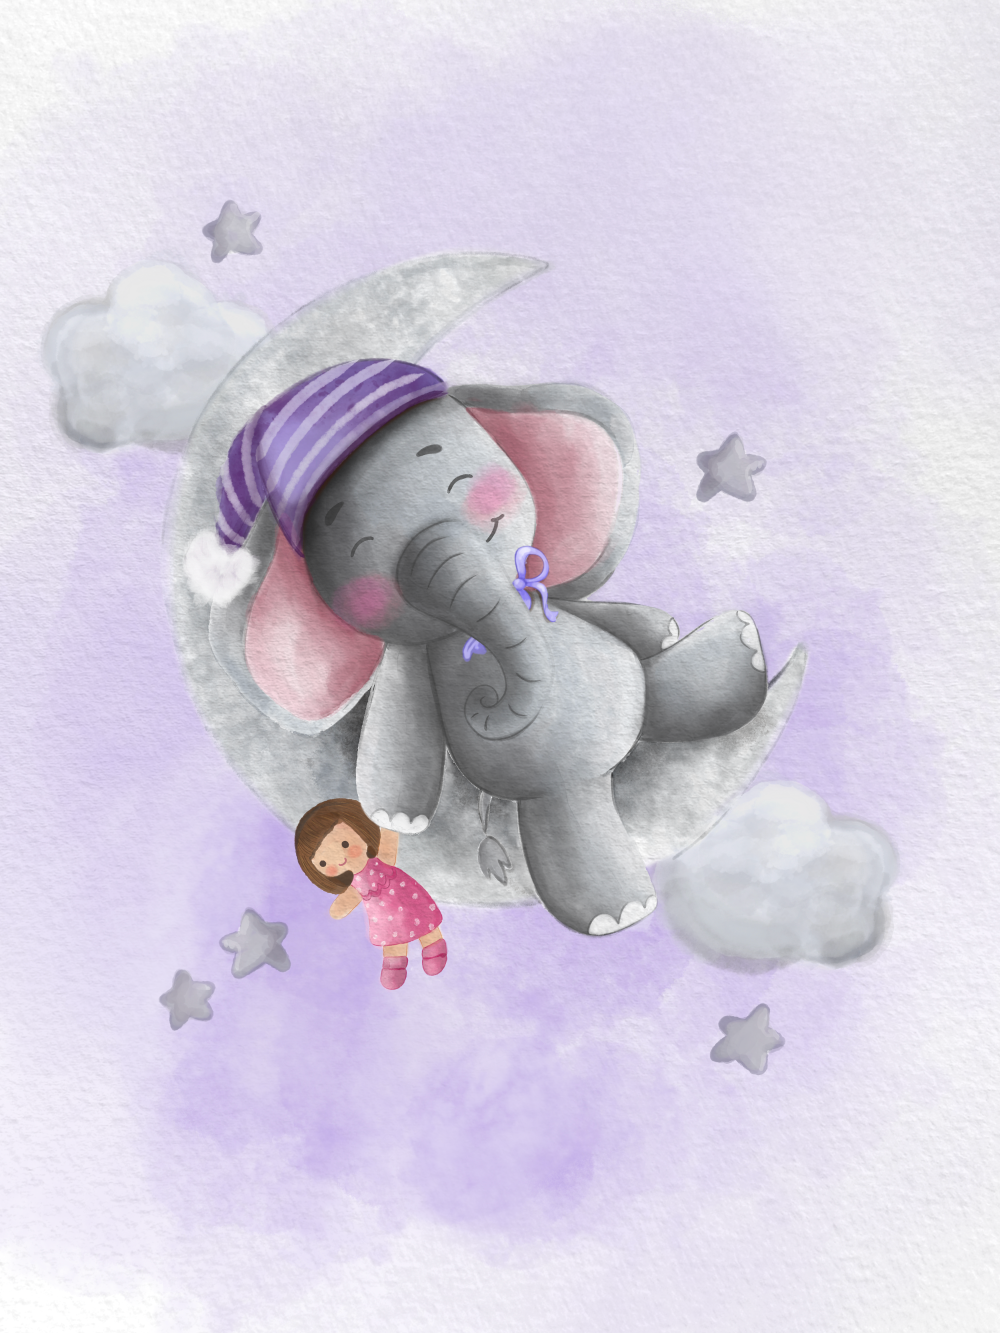 Originální dárek k narození dítěte, miminka, obraz slon na měsíci s čepičkou, mašlí a plyšákem, fialový na plakátu | ZivotniOkamziky.cz